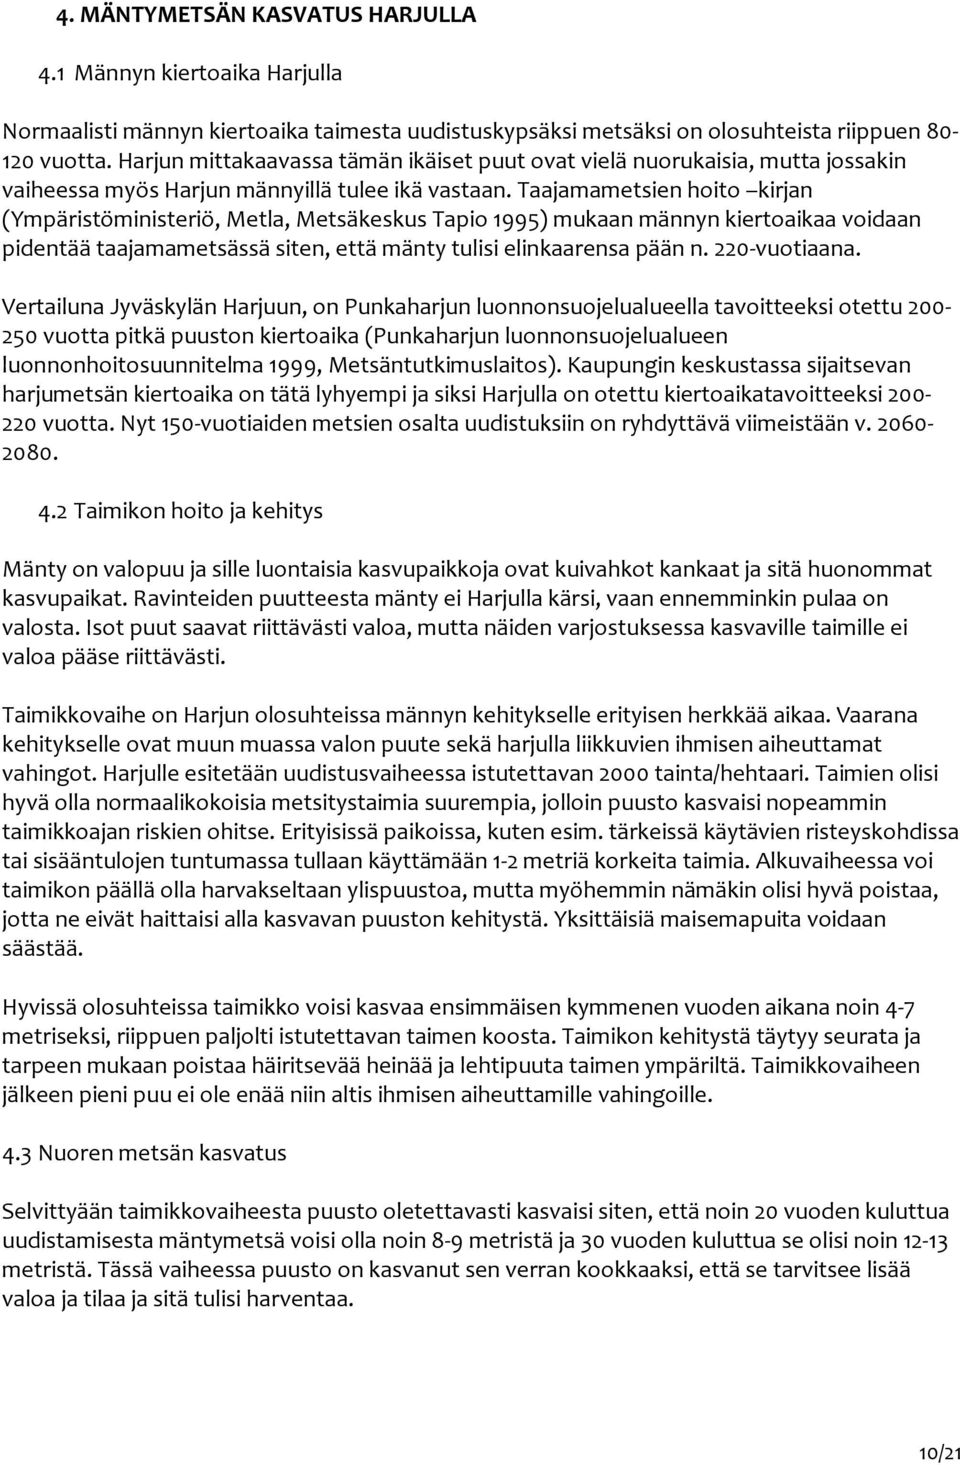 Taajamametsien hoito kirjan (Ympäristöministeriö, Metla, Metsäkeskus Tapio 1995) mukaan männyn kiertoaikaa voidaan pidentää taajamametsässä siten, että mänty tulisi elinkaarensa pään n. 220 vuotiaana.